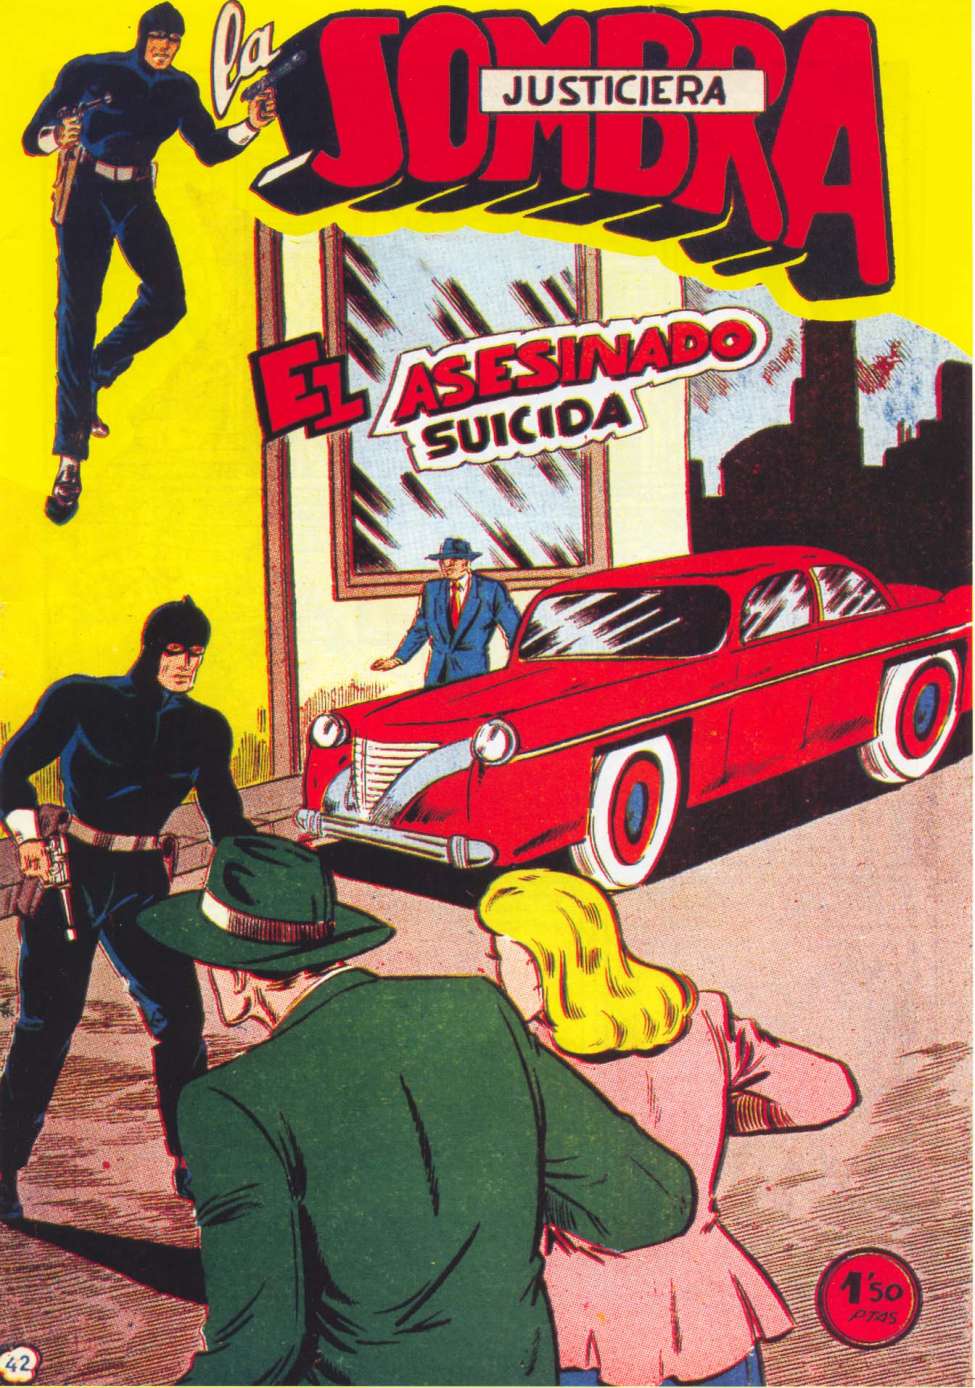 Book Cover For La Sombra Justiciera 42 - El Asesinado Suicida